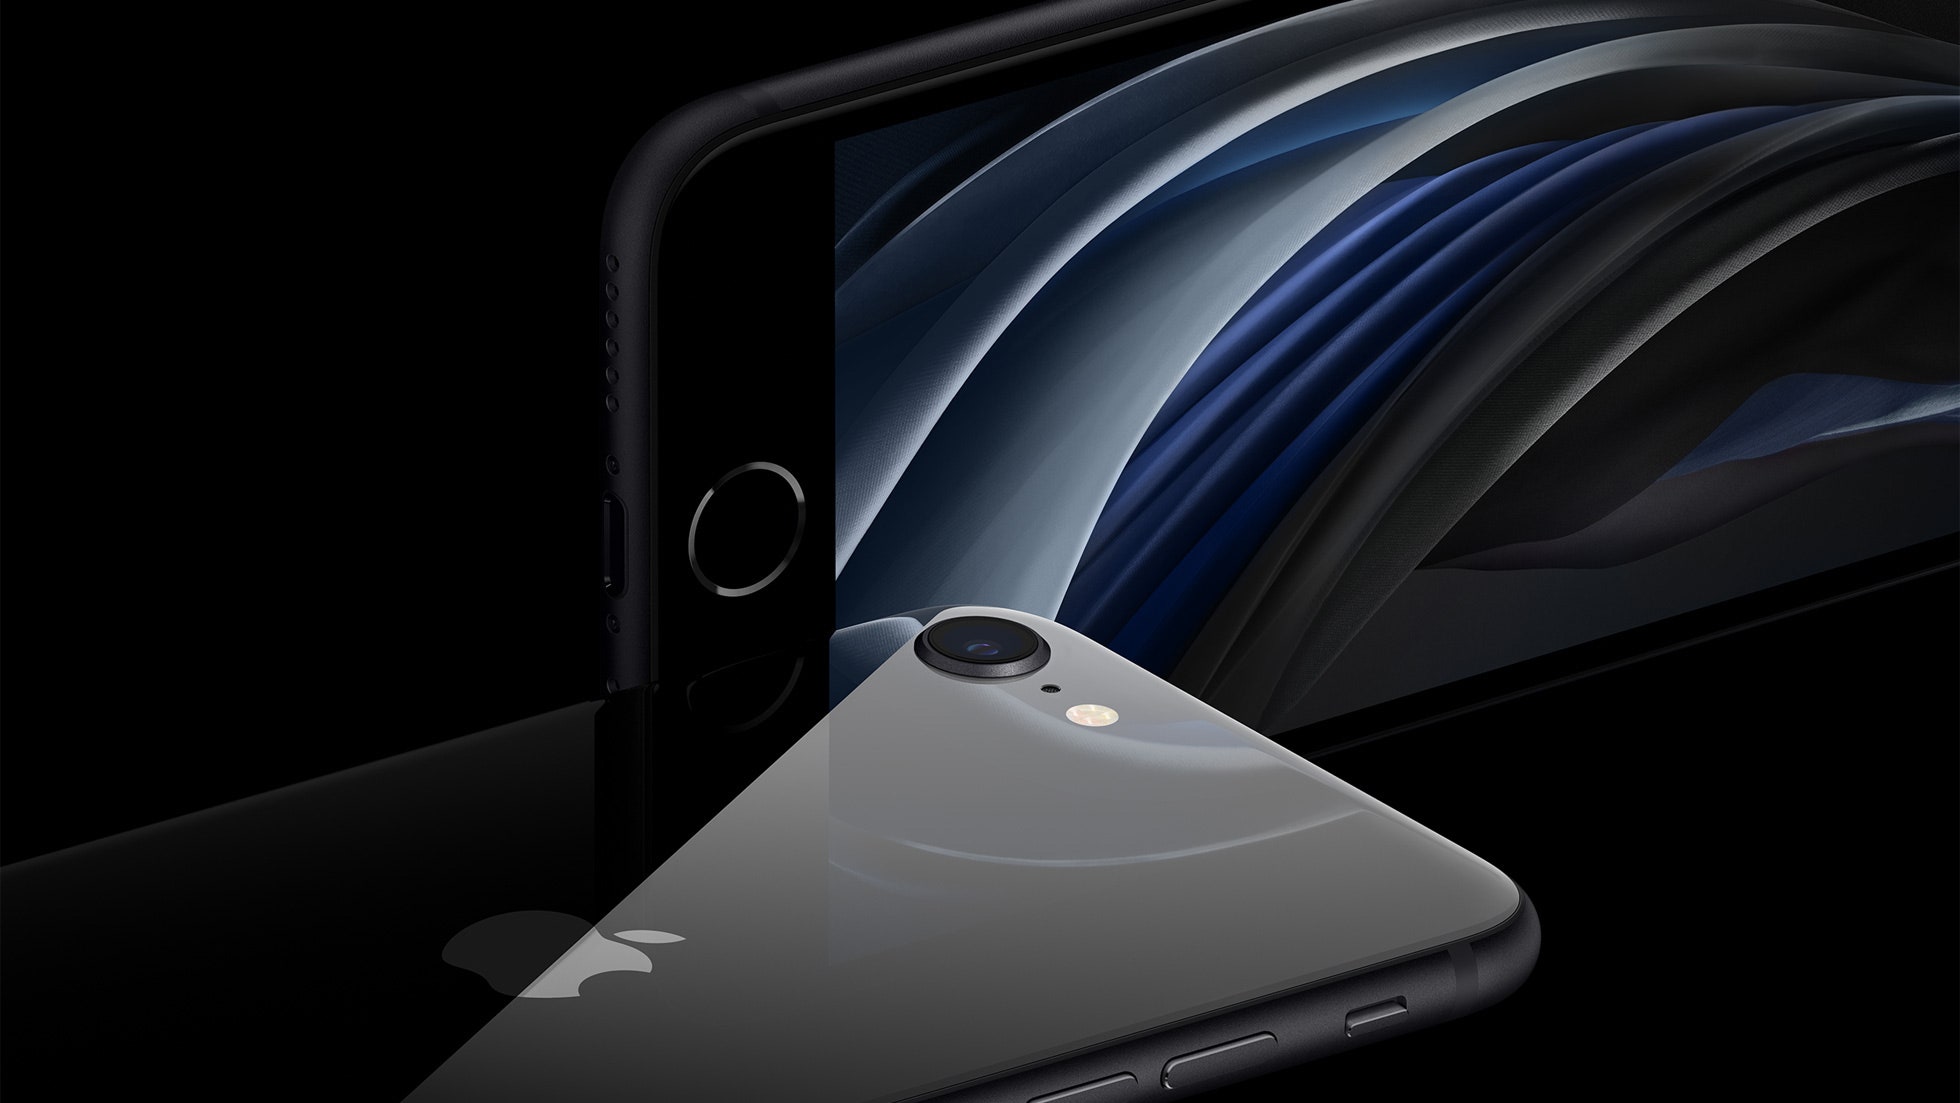 Apple представила новый бюджетный смартфон iPhone SE